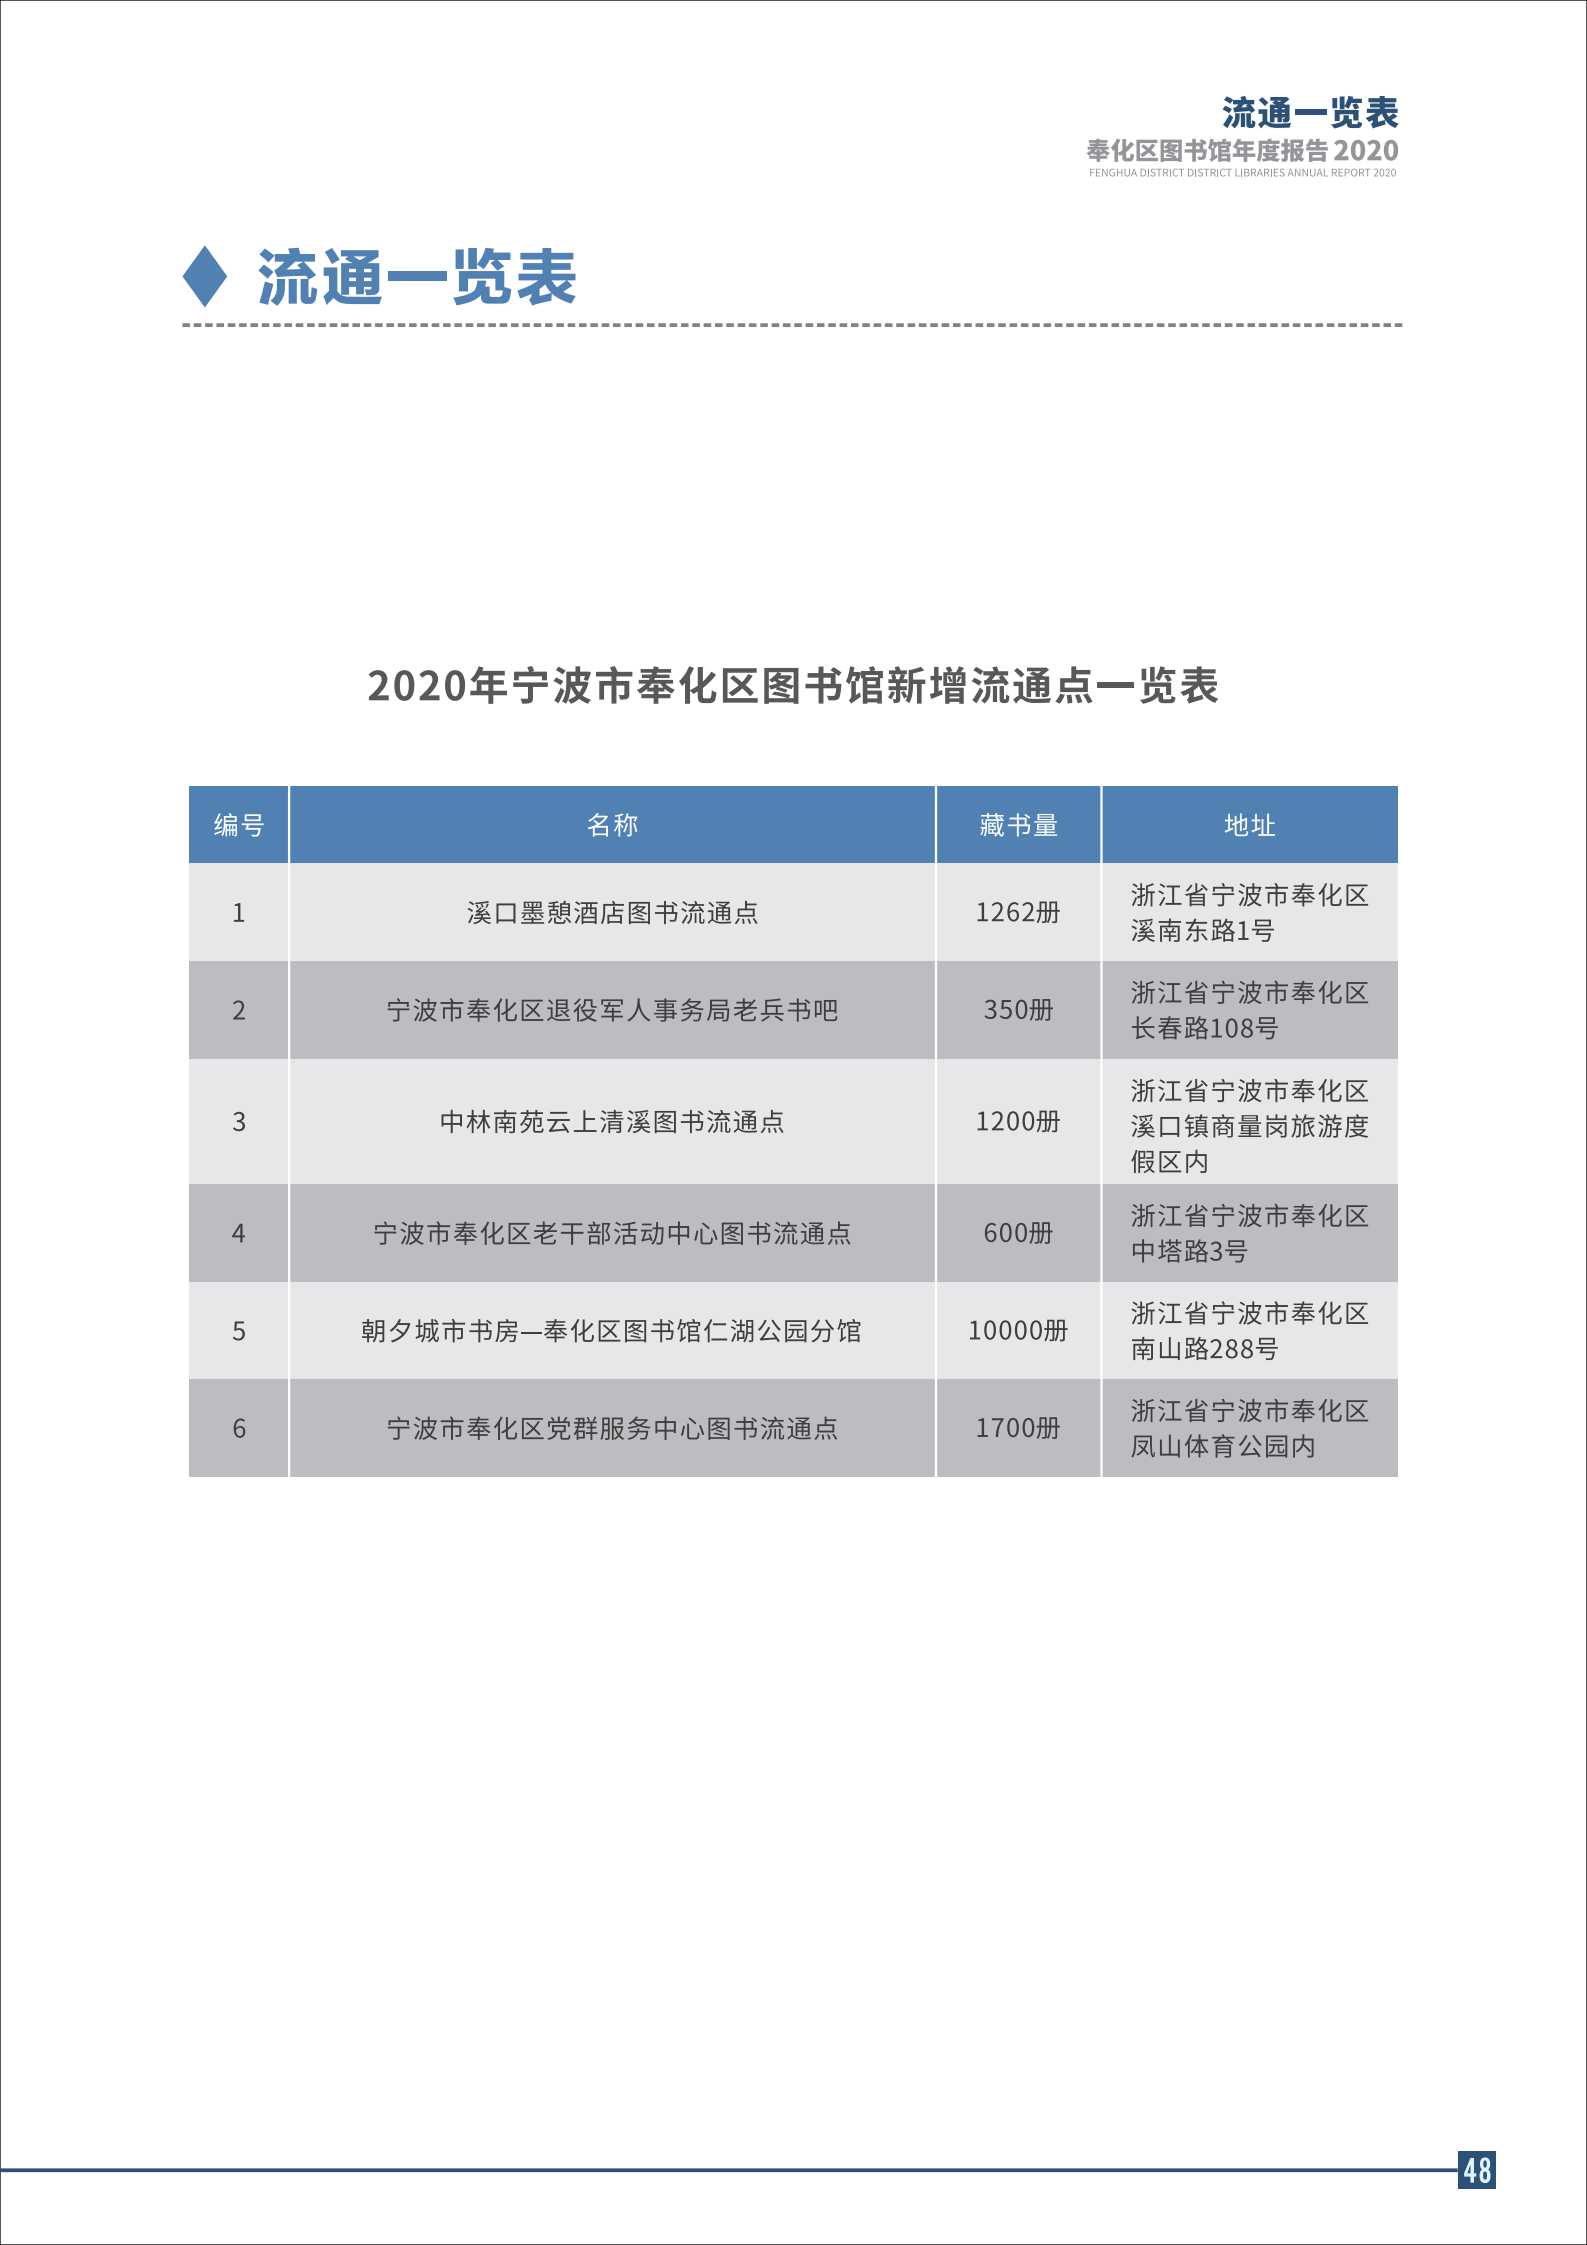 宁波市奉化区图书馆2020年年度报告 终稿_48.png